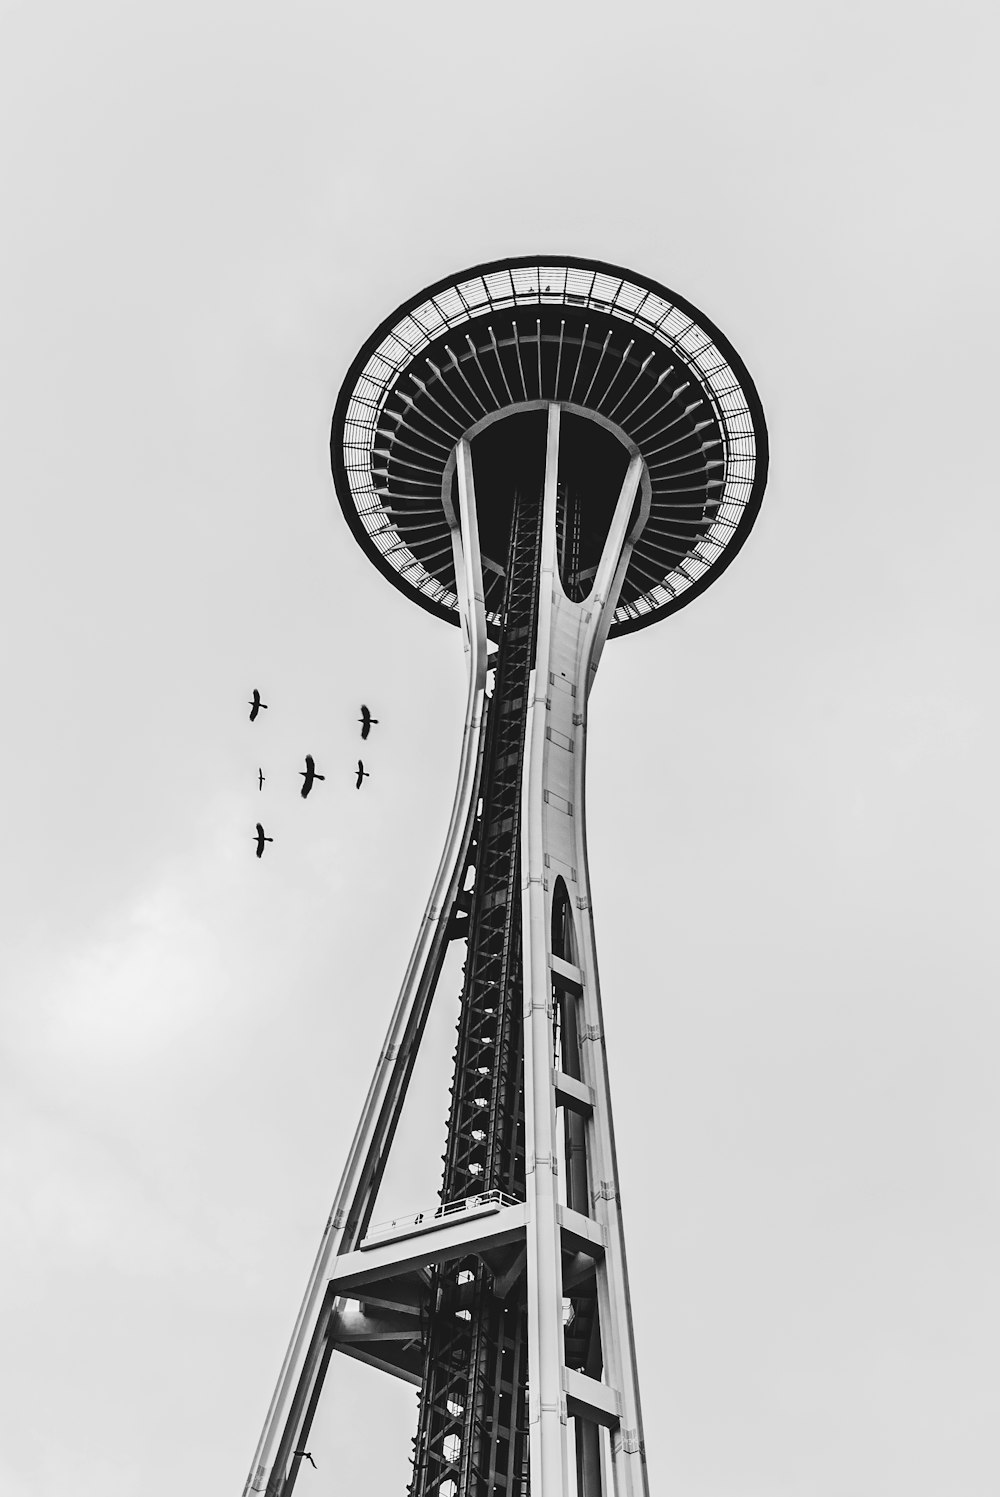 塔の上を飛ぶ鳥のグレースケール写真